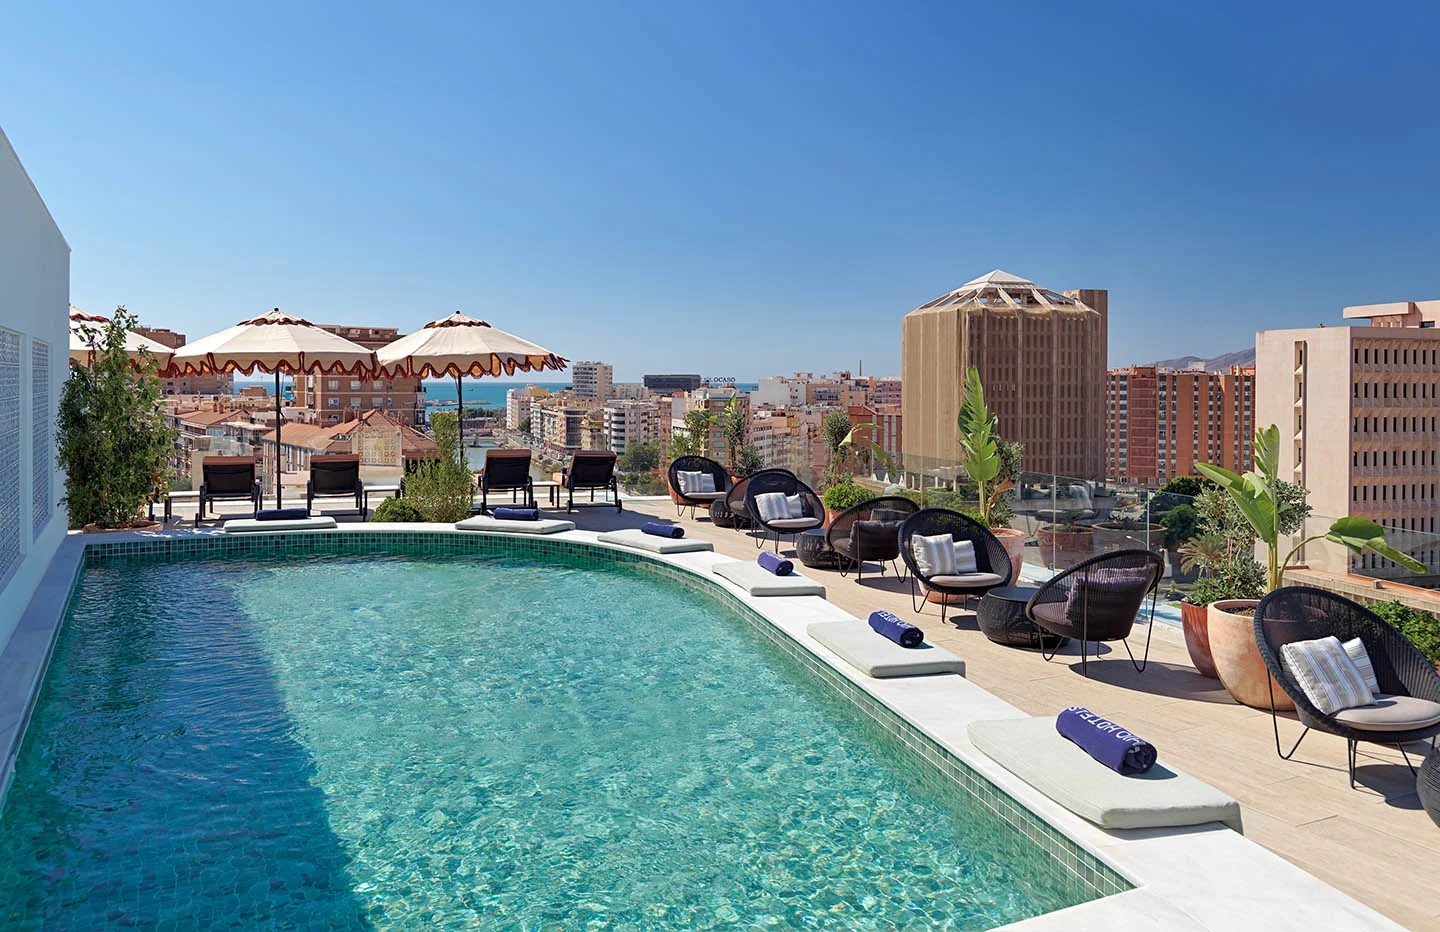 La piscina del hotel H10 Croma Málaga, en una foto publicada en su página web. Se prevé que piscinas como esta sí puedan llenarse, mientras que no las de particulares.